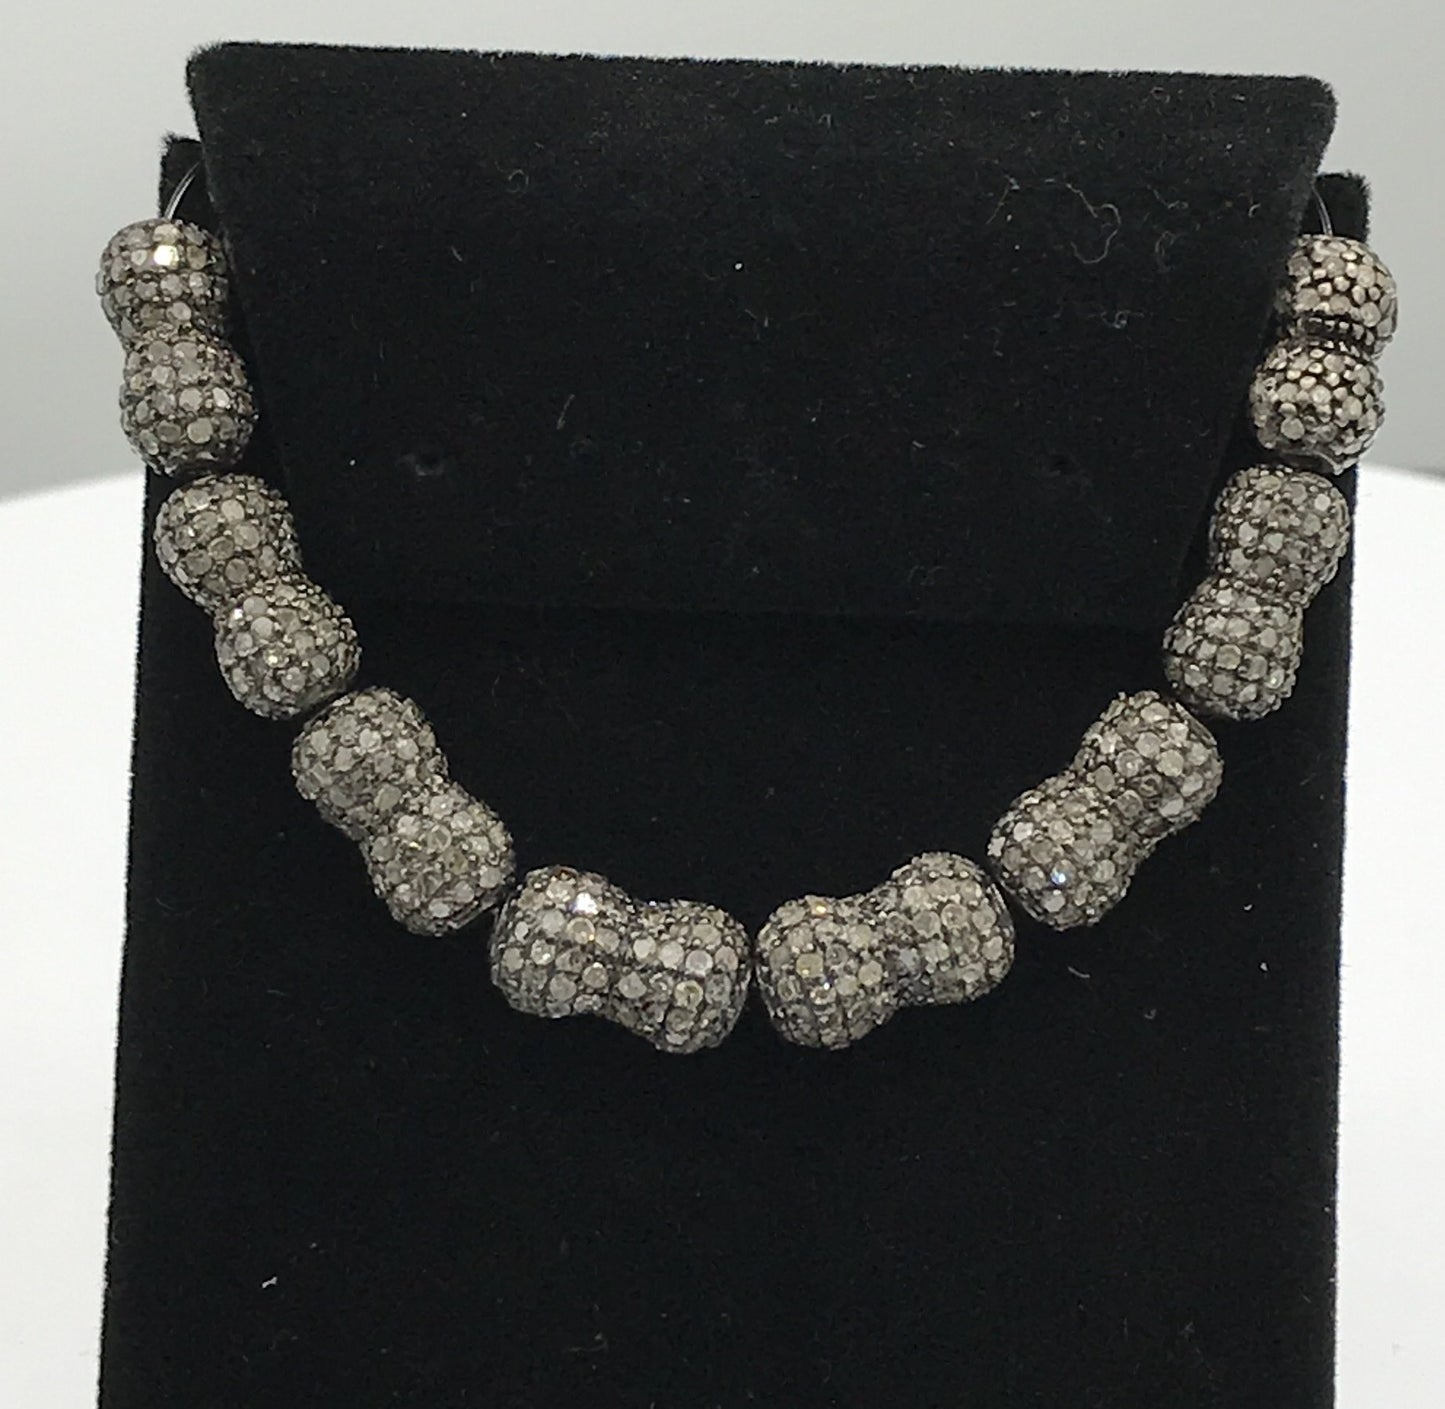 Bicone Shape pave diamond Beads